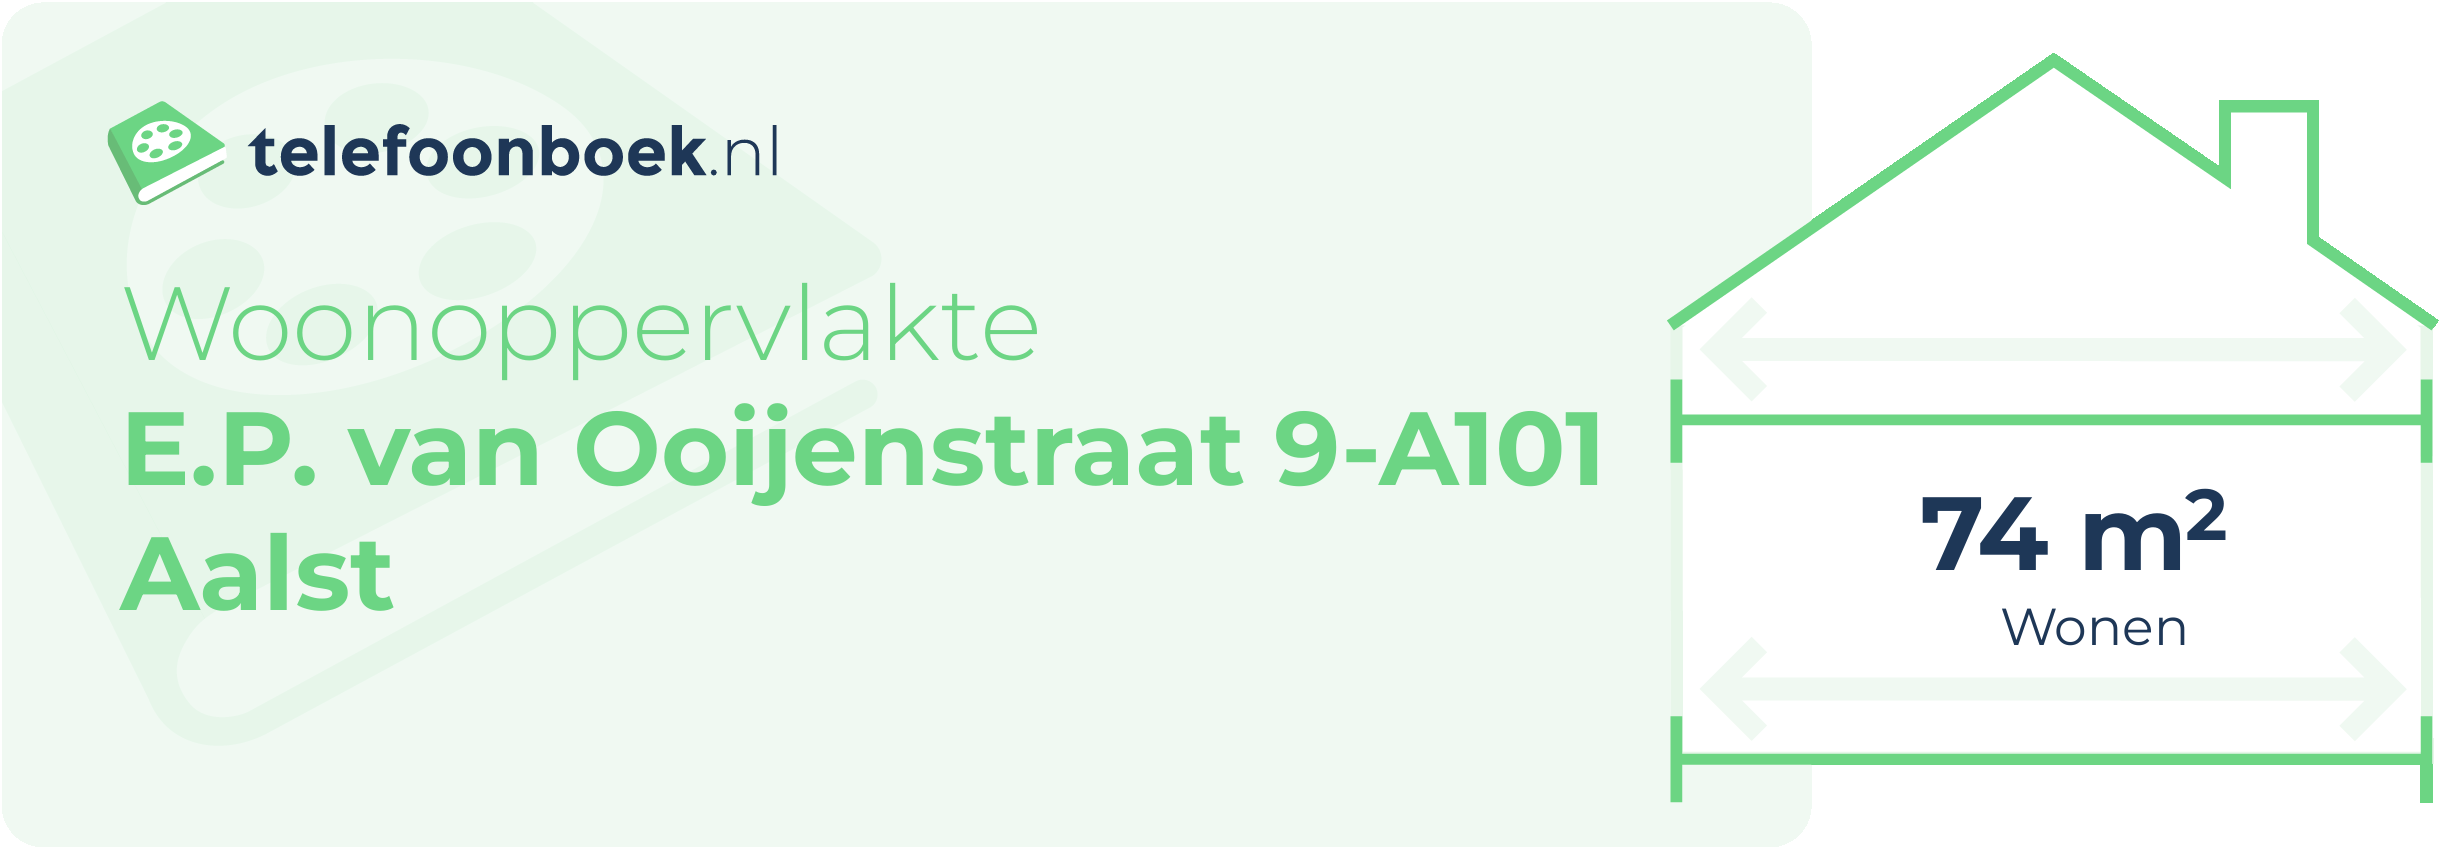 Woonoppervlakte E.P. Van Ooijenstraat 9-A101 Aalst